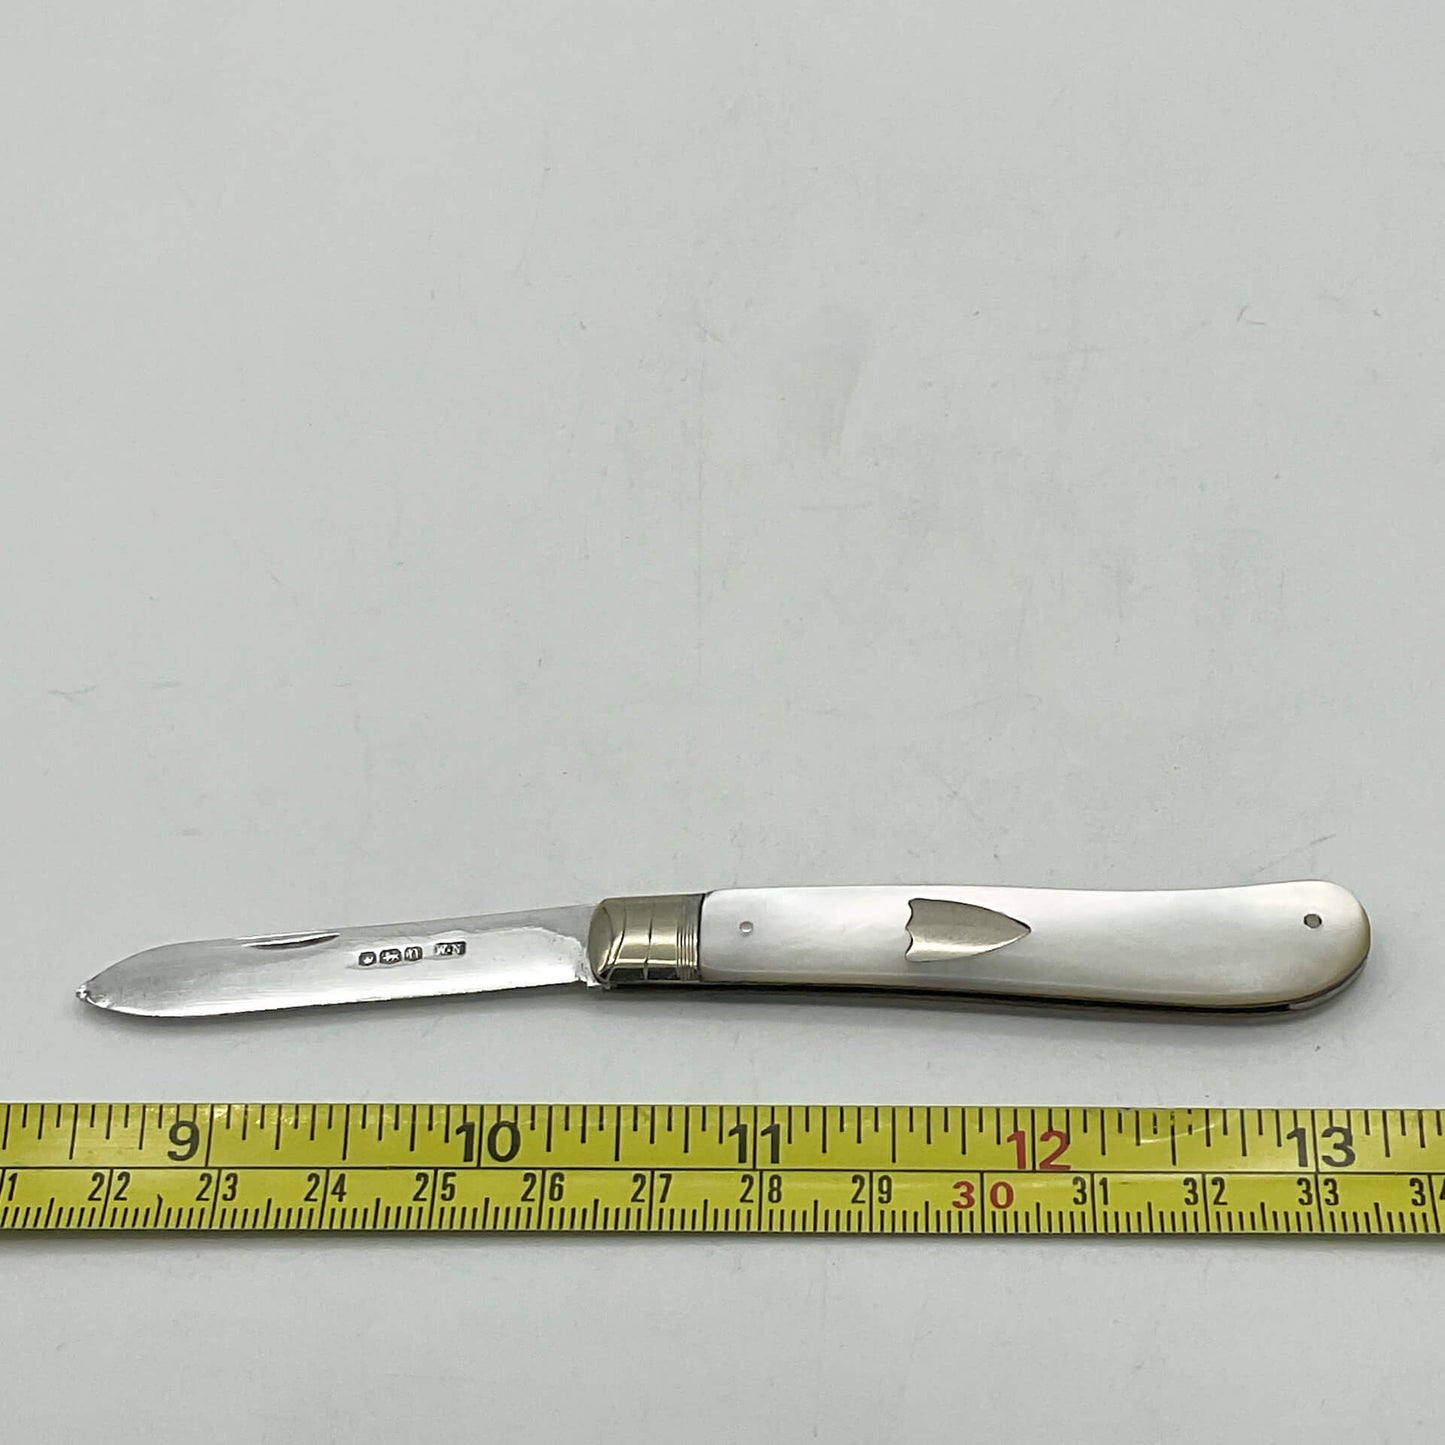 Vintage Large Sterling Silver Fruit Knife, 1930 Hallmark